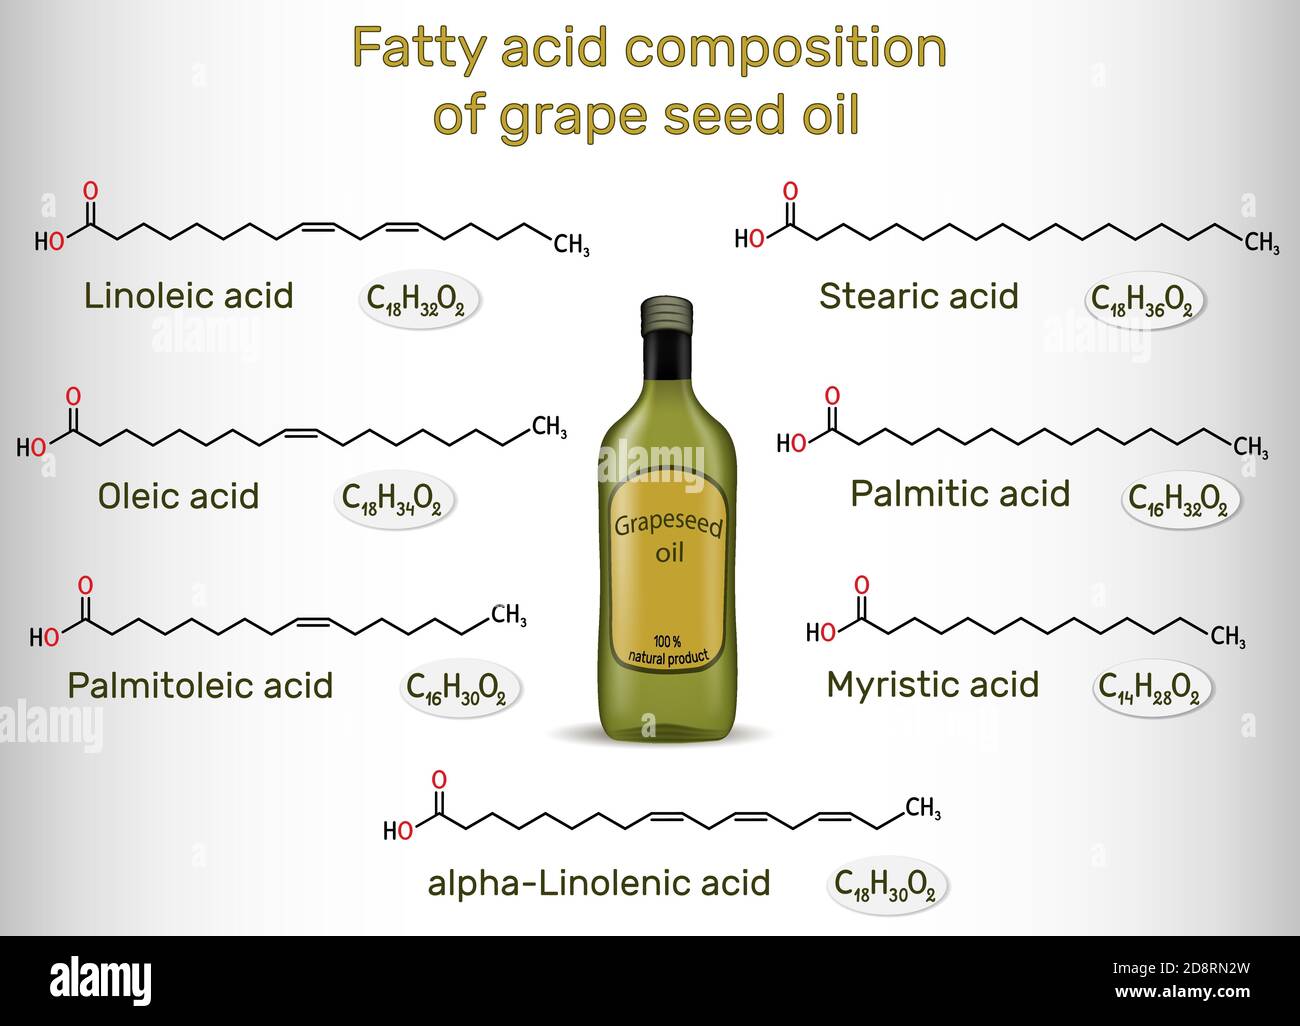 Composizione di acido grasso dell'olio di semi d'uva. Composti chimici: Acido palmitico, acido stearico, palmitoleico, oleico, linoleico, alfa-linolenico. Strutturale Illustrazione Vettoriale